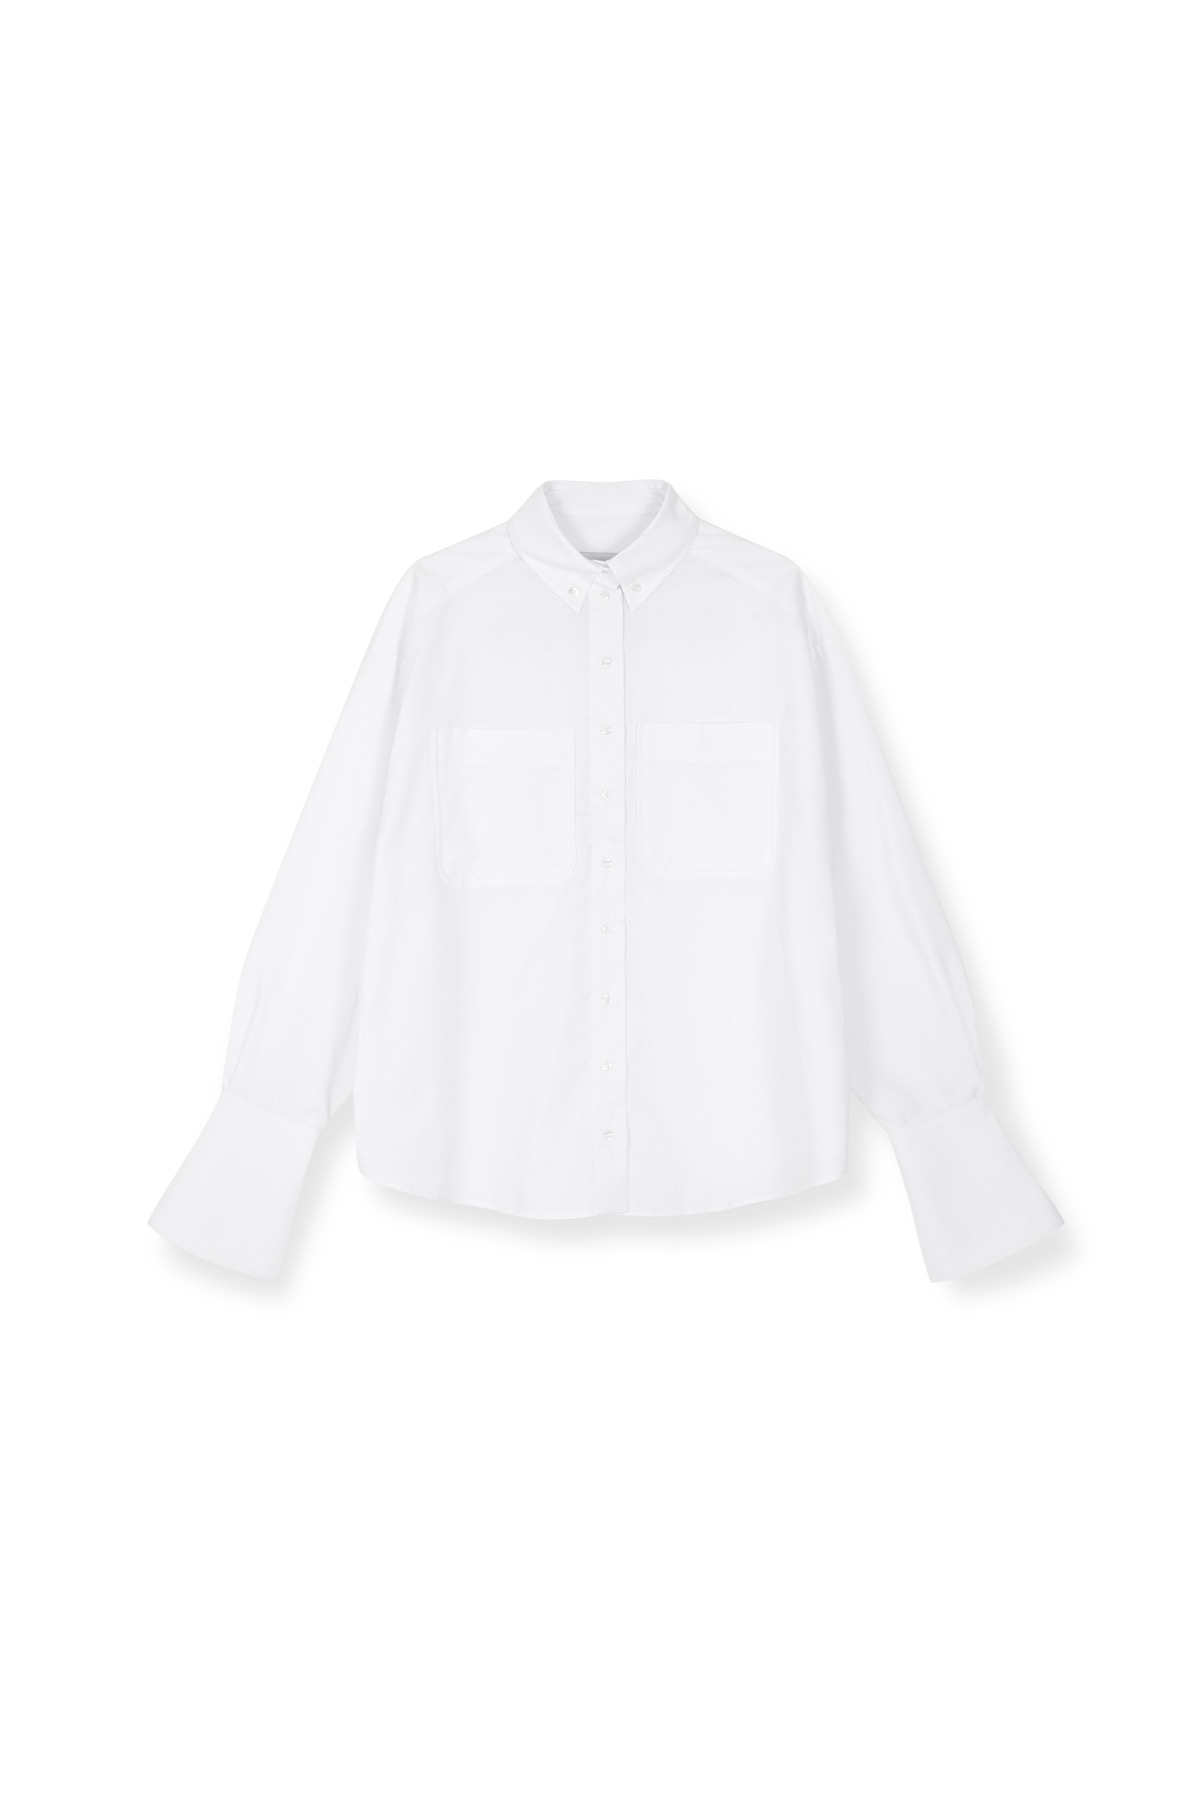 STEF Shirt White